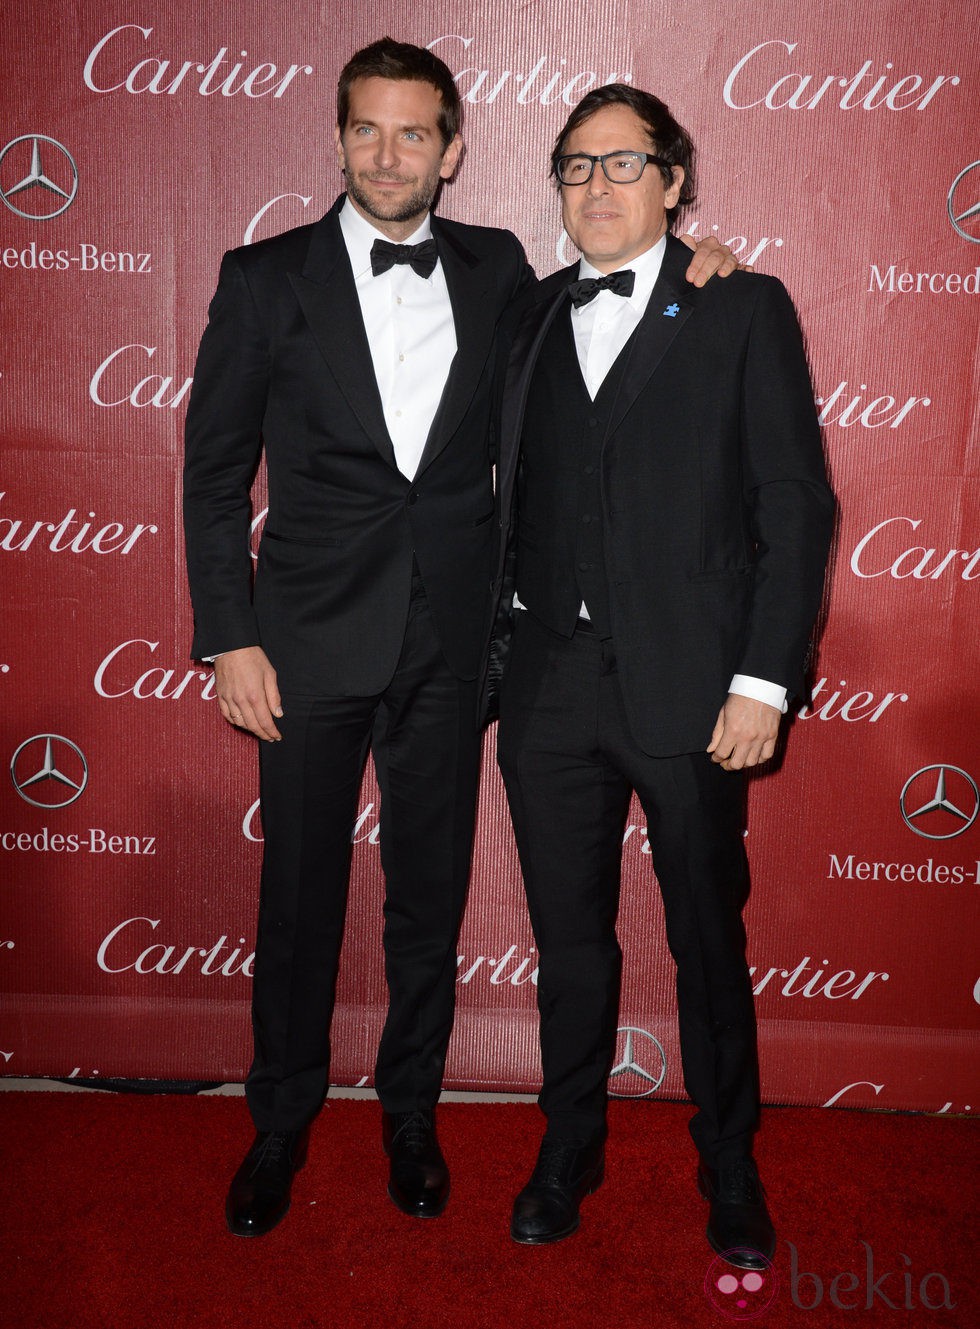 Bradley Cooper y David O. Russell en la gala de premios del Festival Internacional de Palm Springs